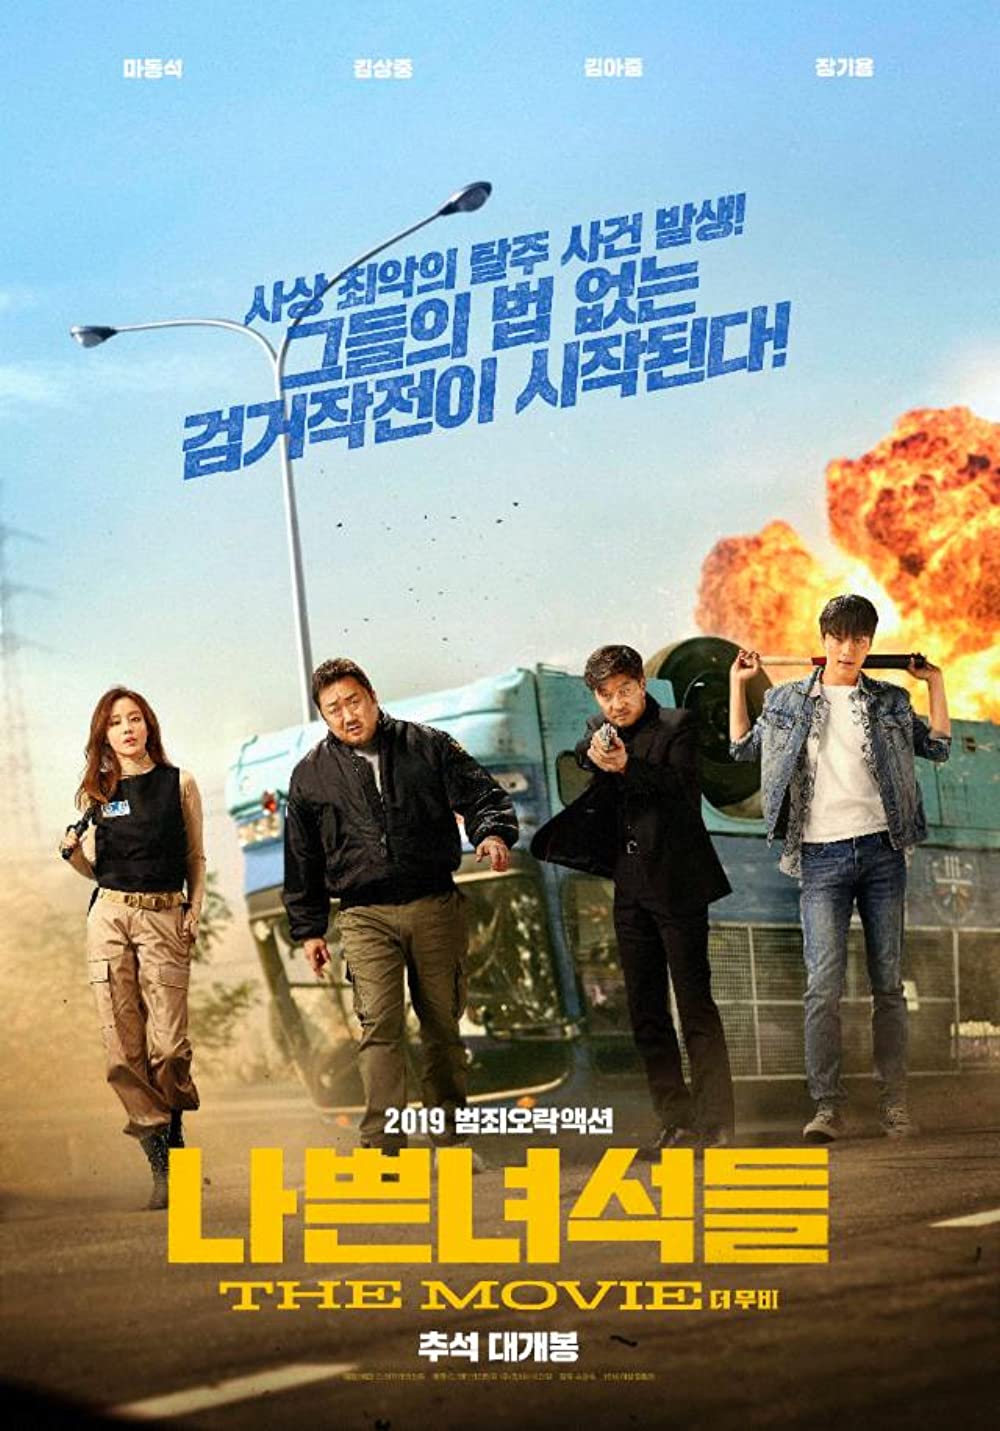 11 Film Korea action terbaik, Recalled penuh teka-teki menegangkan